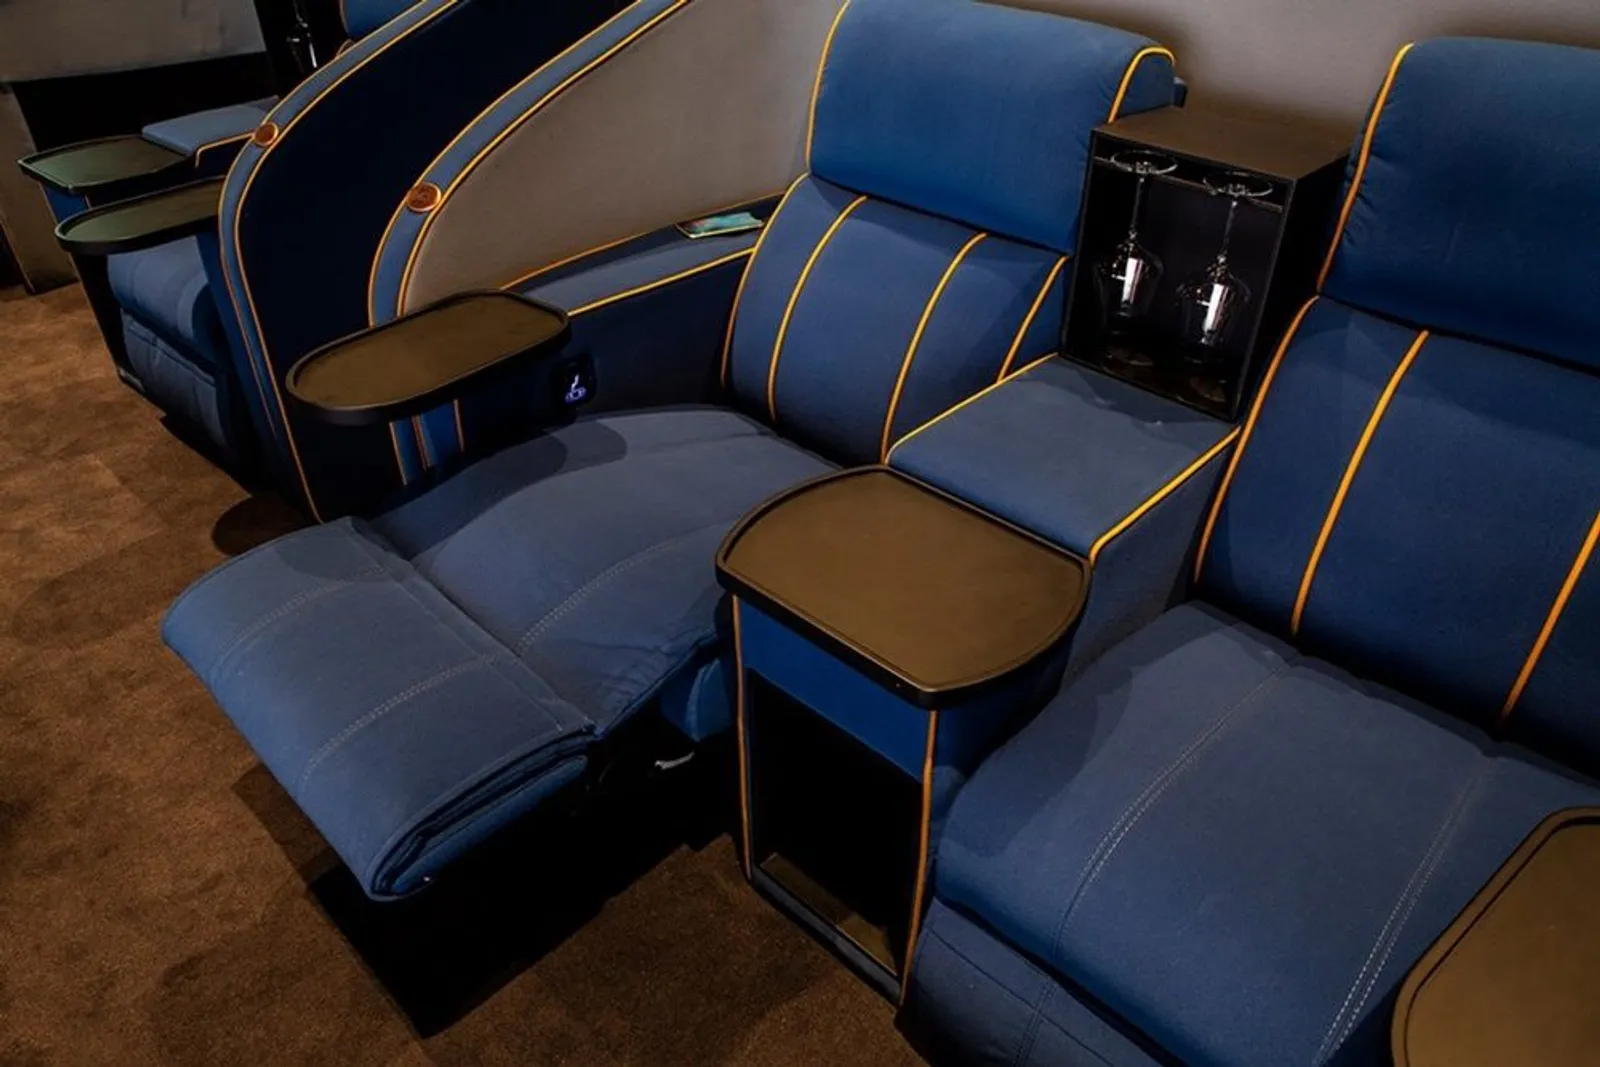 Tanpa Kursi, Bioskop di Swiss Ini Justru Pakai Kasur dan Sofa Bed